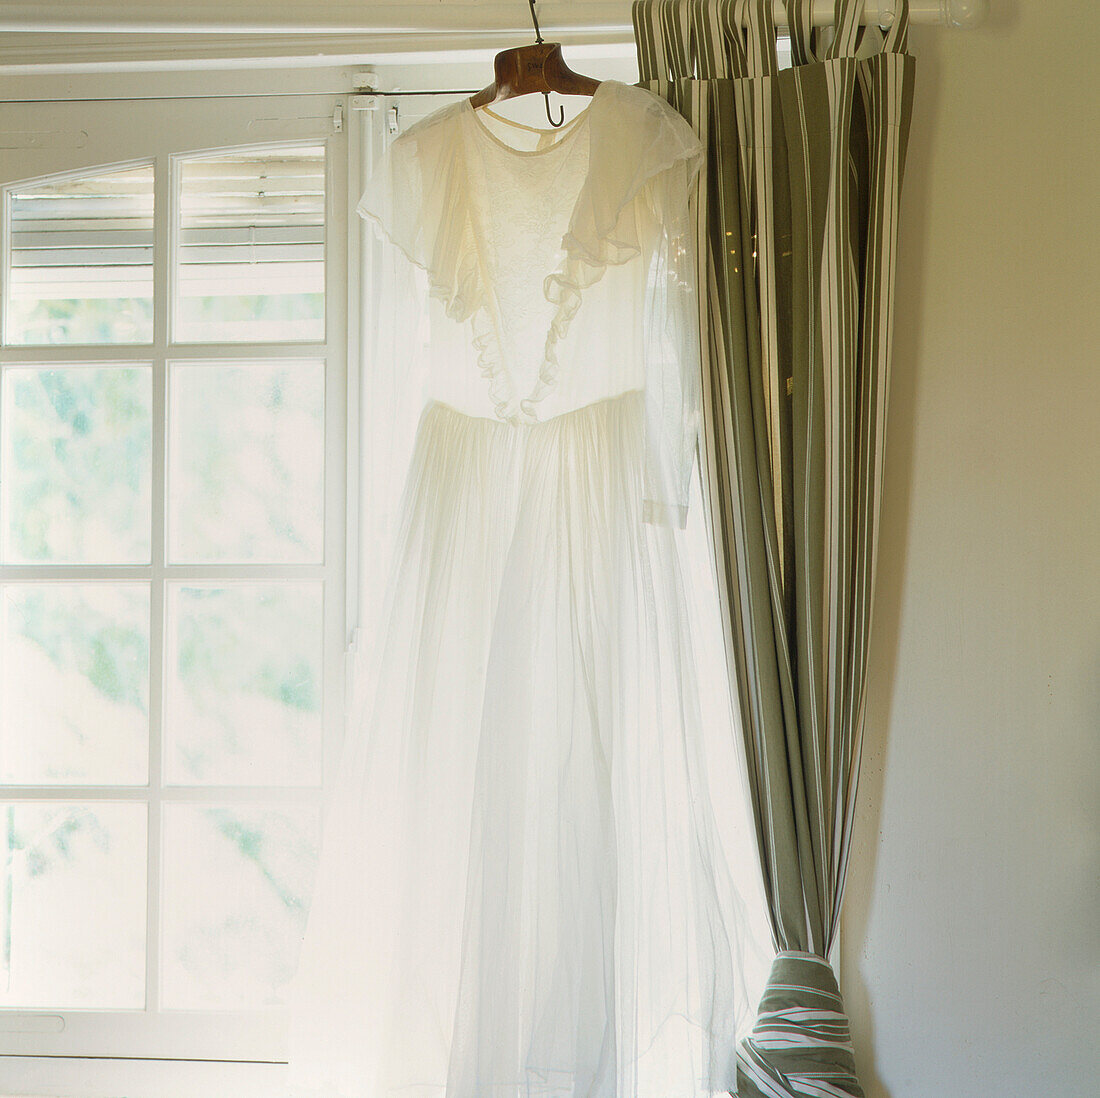 Fenster mit weißem Kleid und Vorhängen